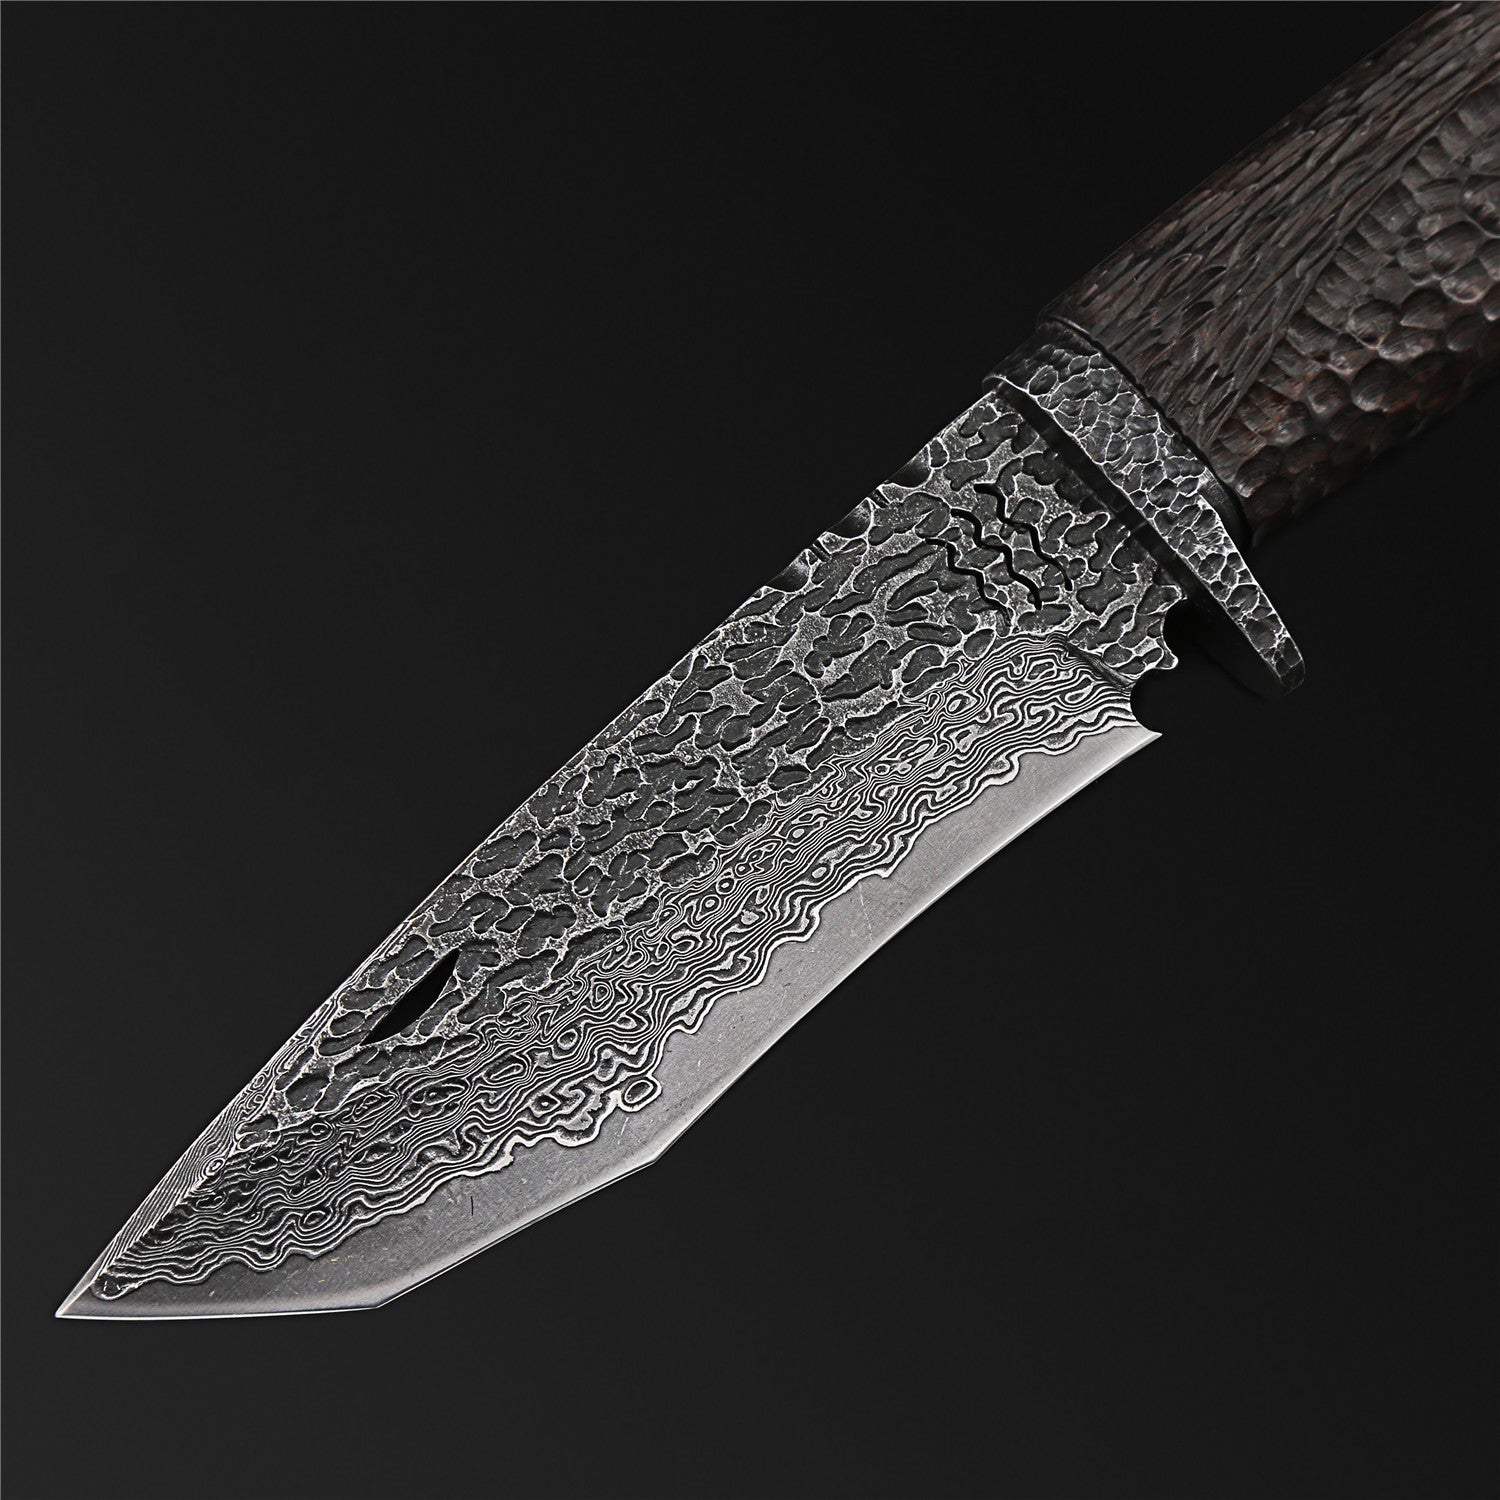 The Dark Warrior Damascus Steel Fixed Blade